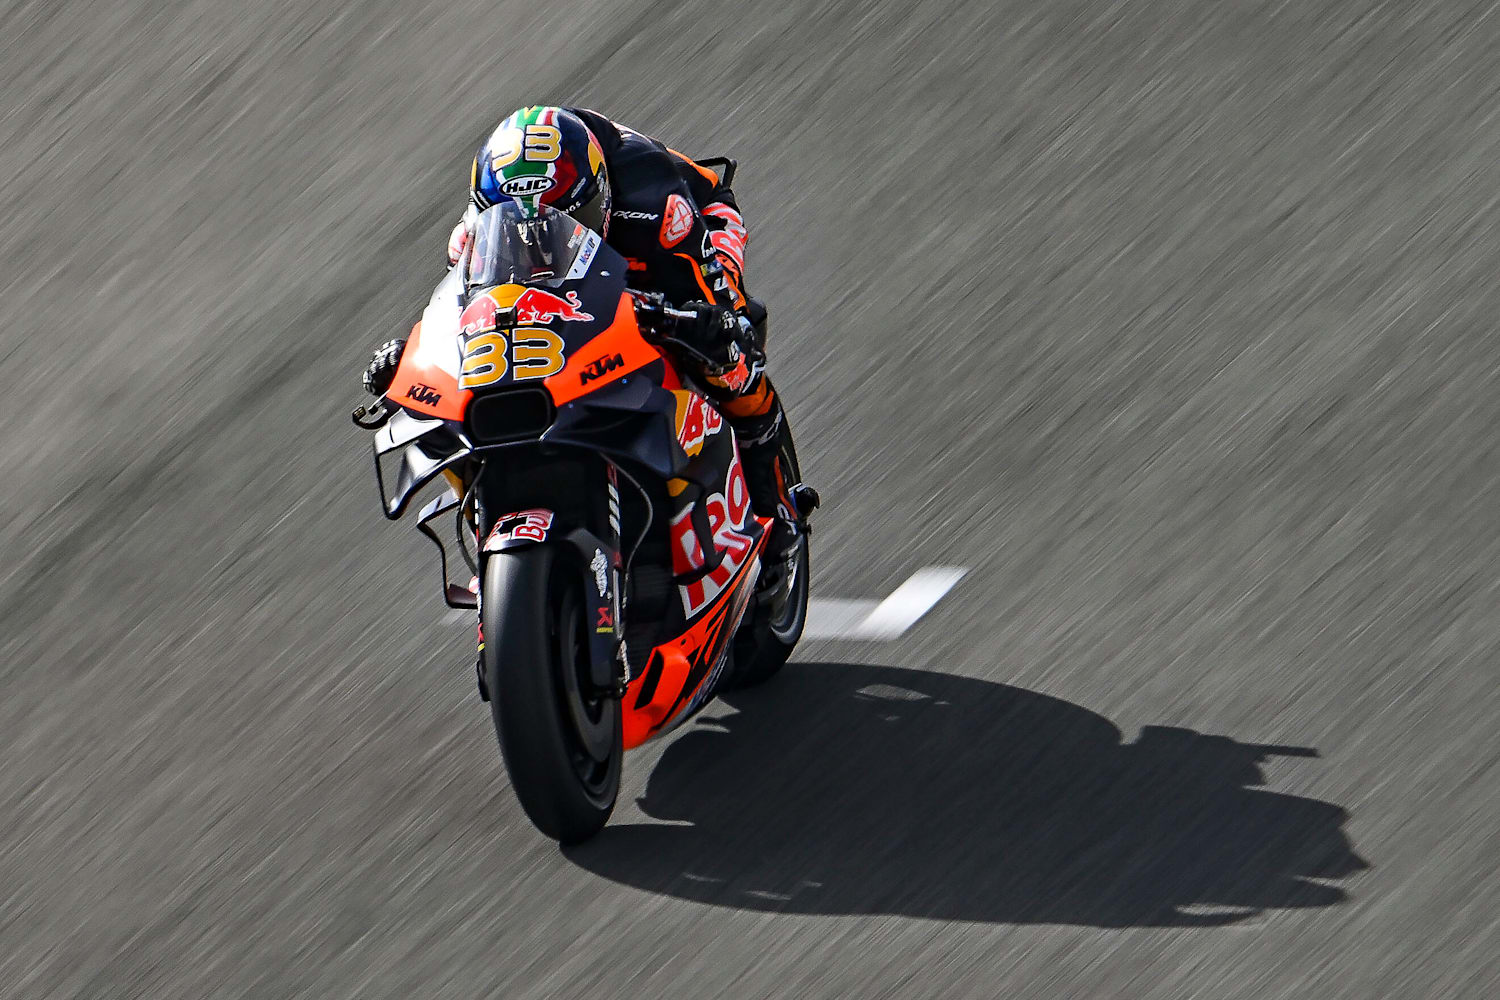 G1 - 'MotoGP 13', de corrida de motos, ganha vídeo que mostra realismo -  notícias em Games